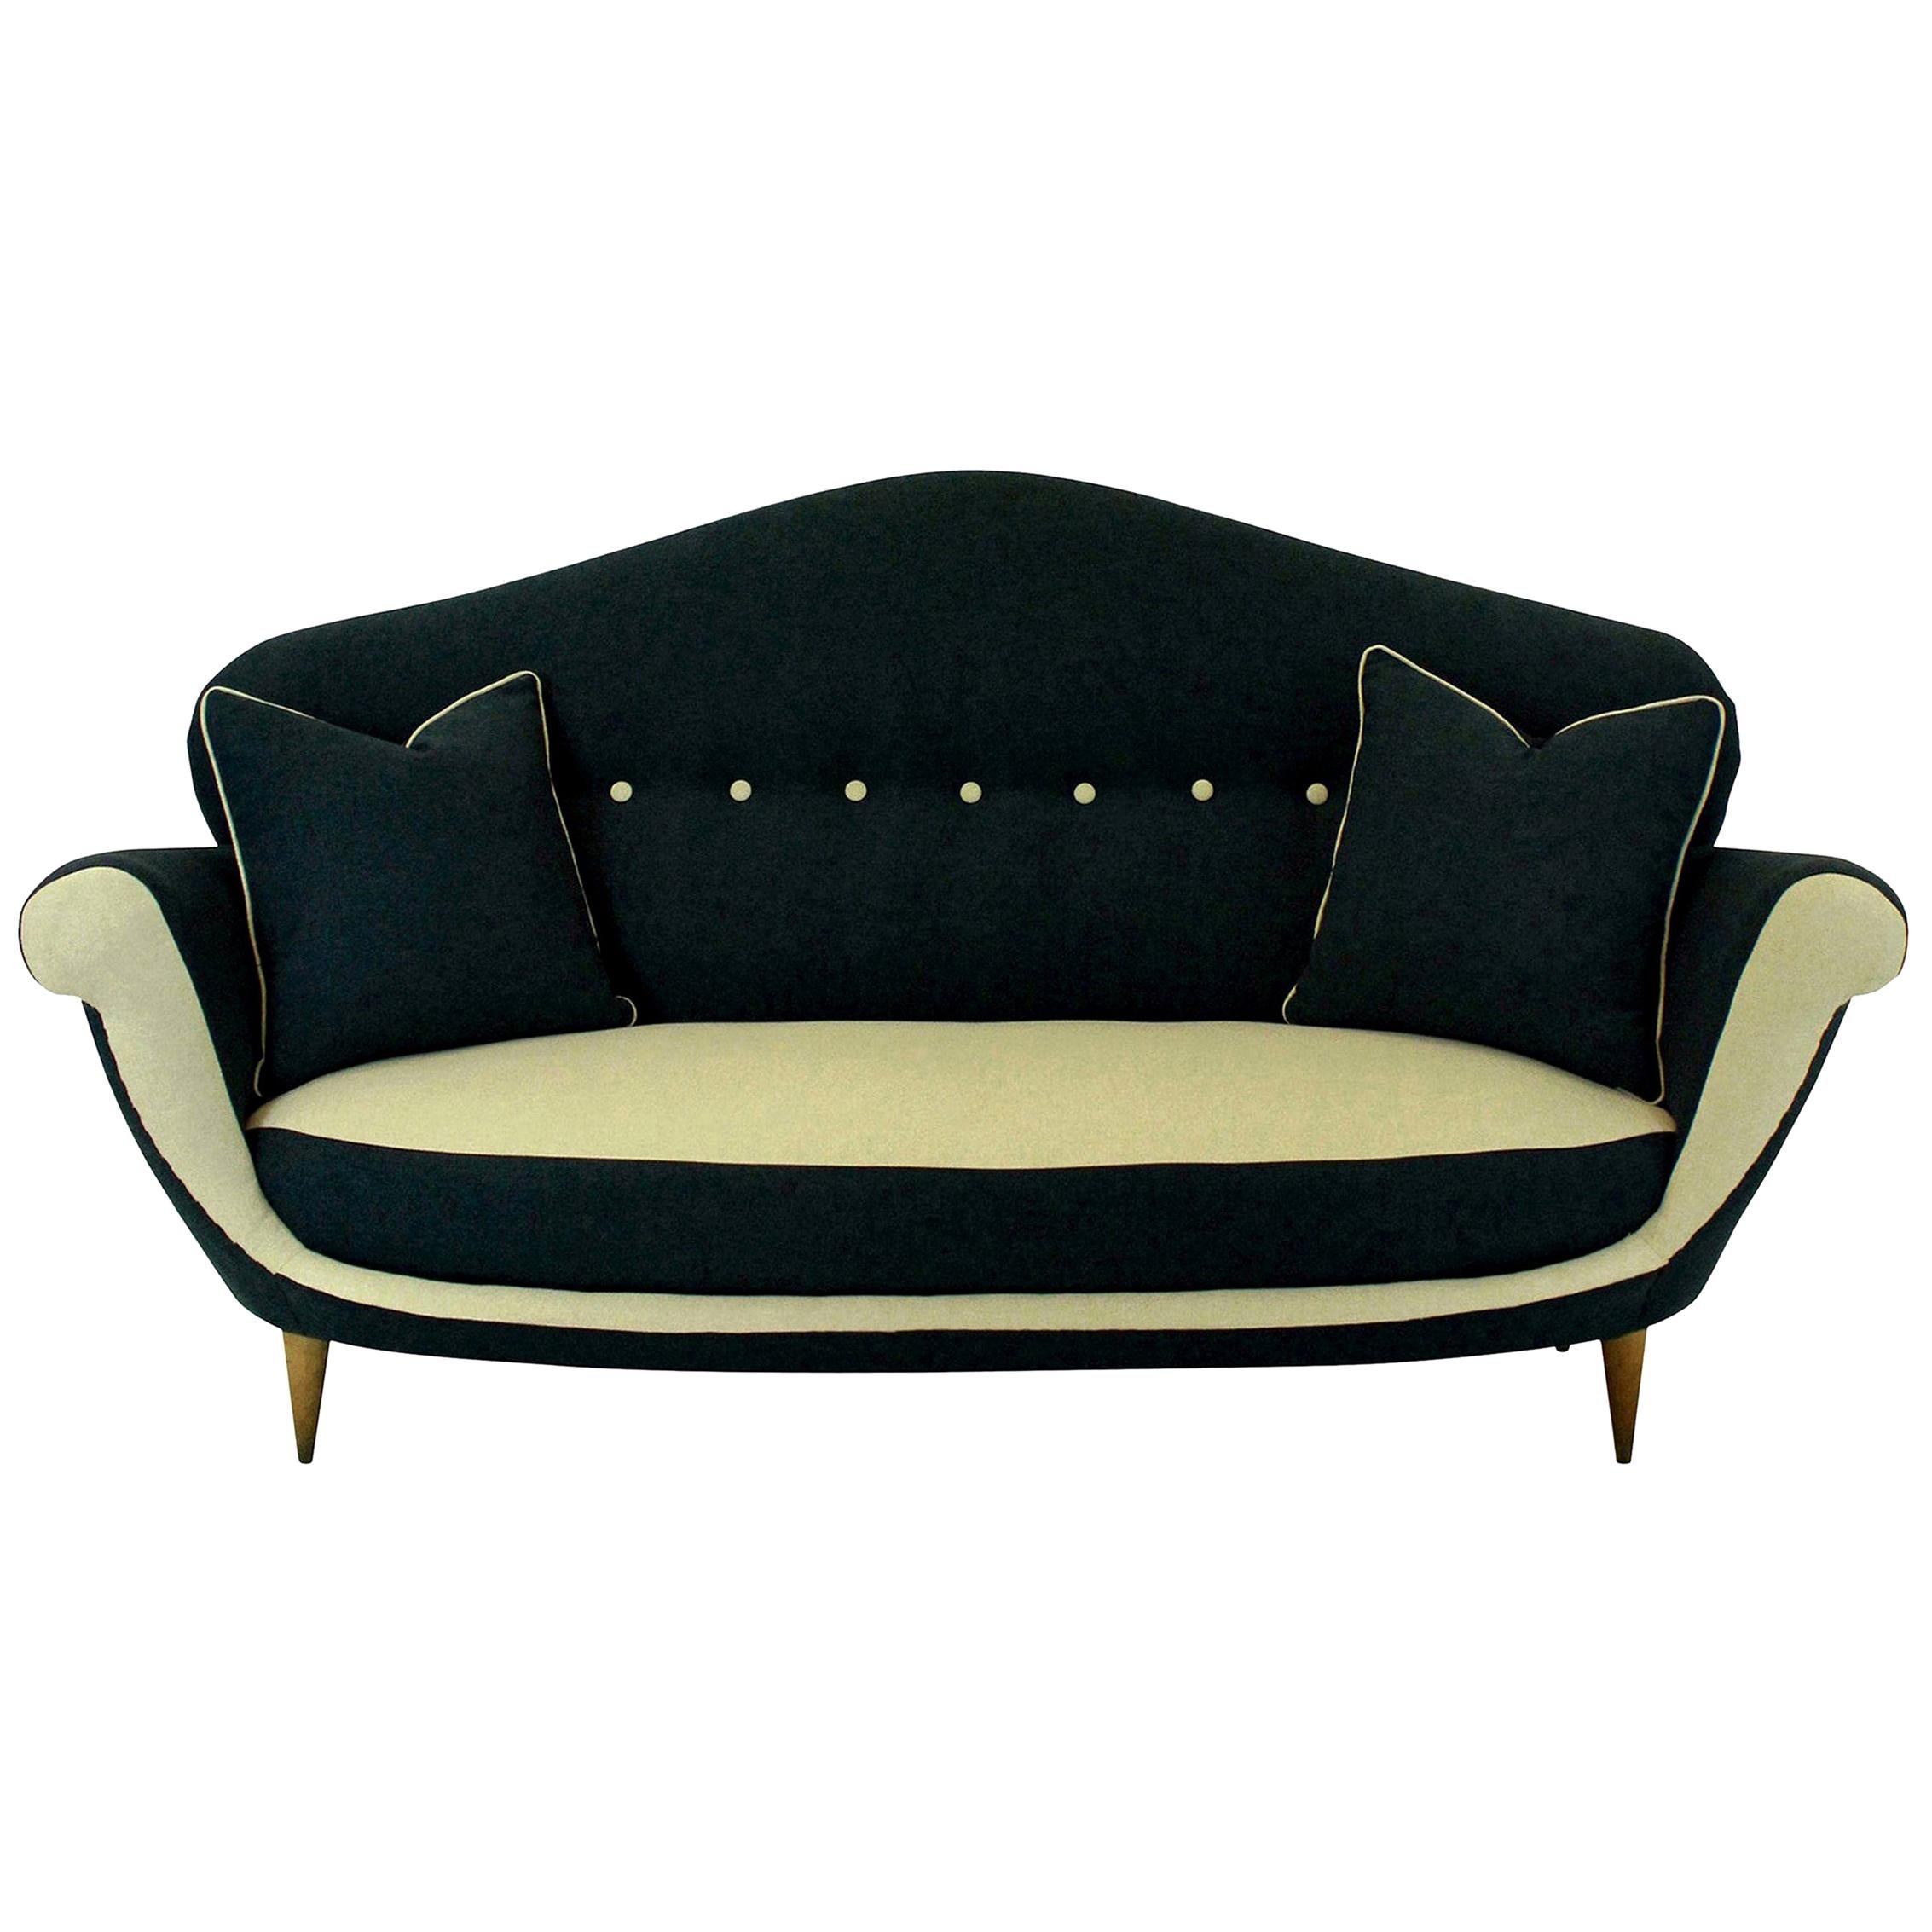 Three-Seat Italian Sofa of Unusual Design